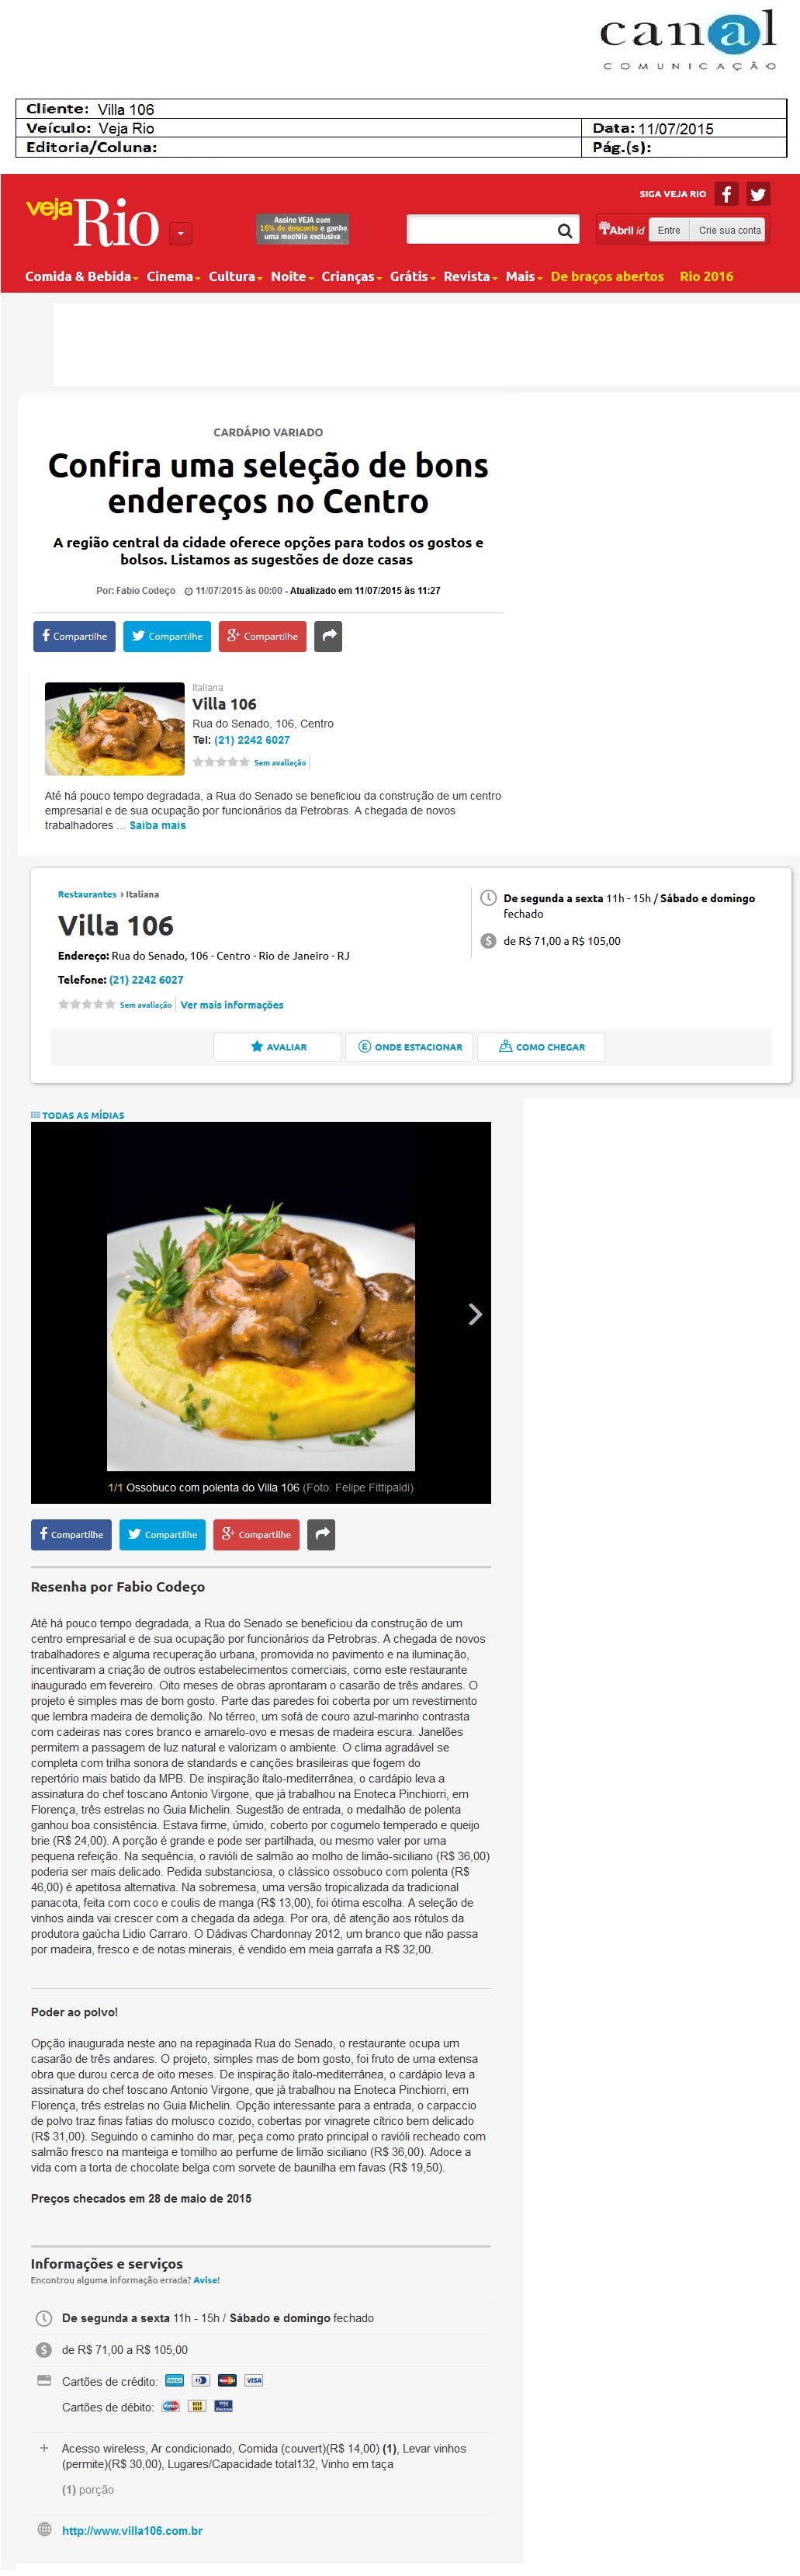 Villa-106_Veja-Rio_-_11-07-2015